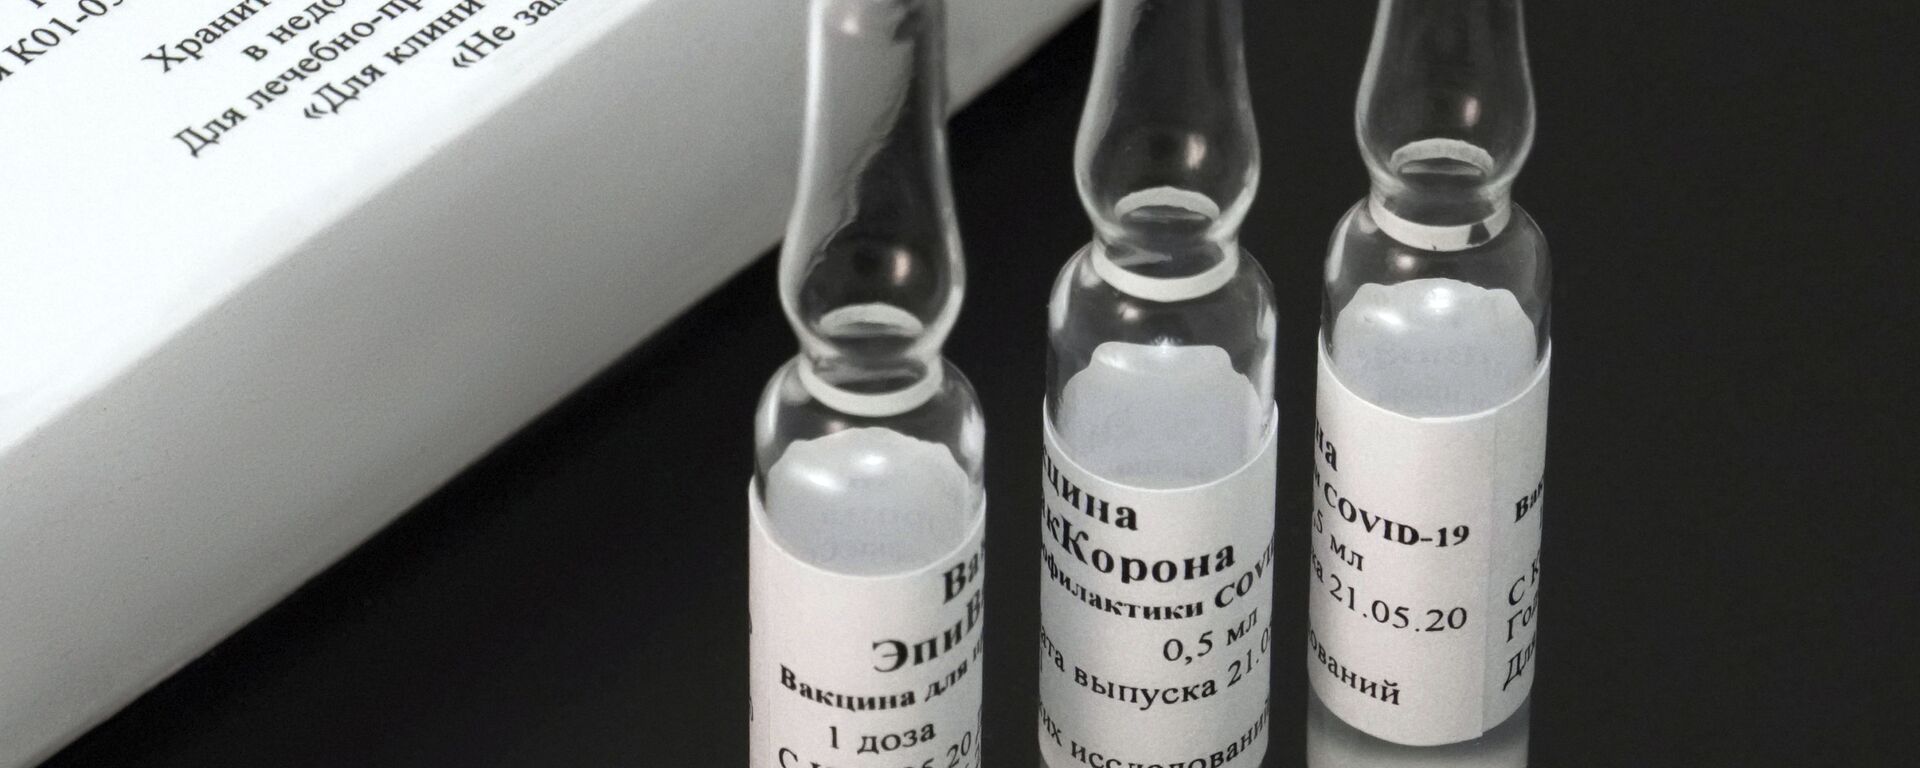 EpiVacCorona, vacuna rusa - Sputnik Mundo, 1920, 07.04.2021